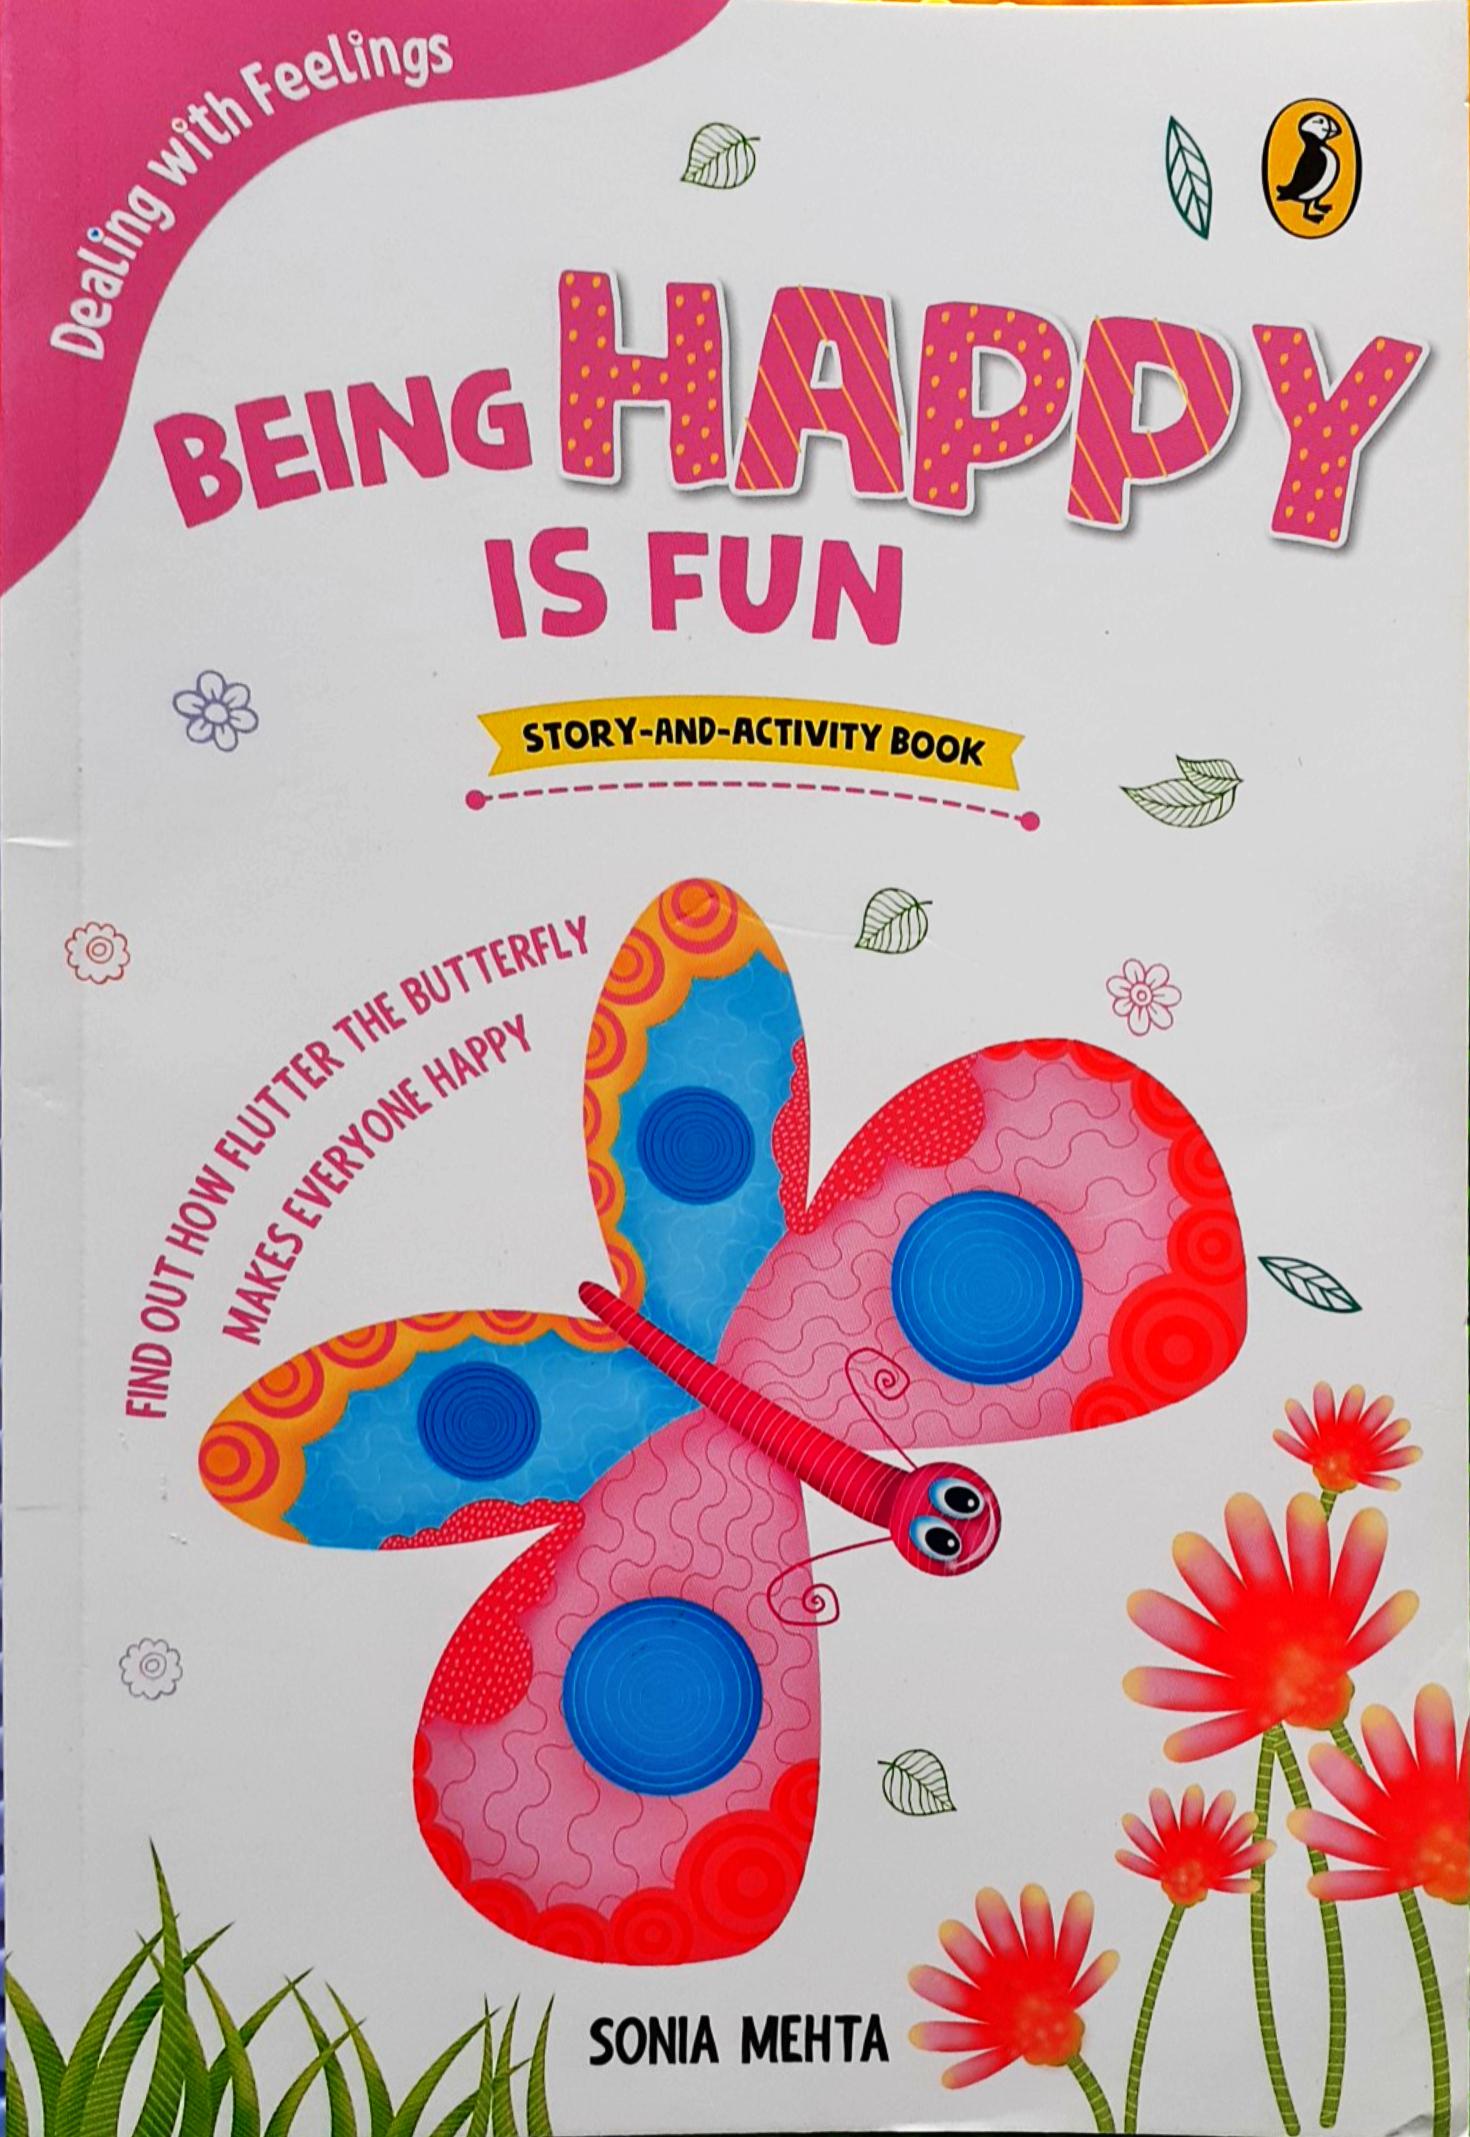 IMG : Dealings with feelings- Being Happy is Fun